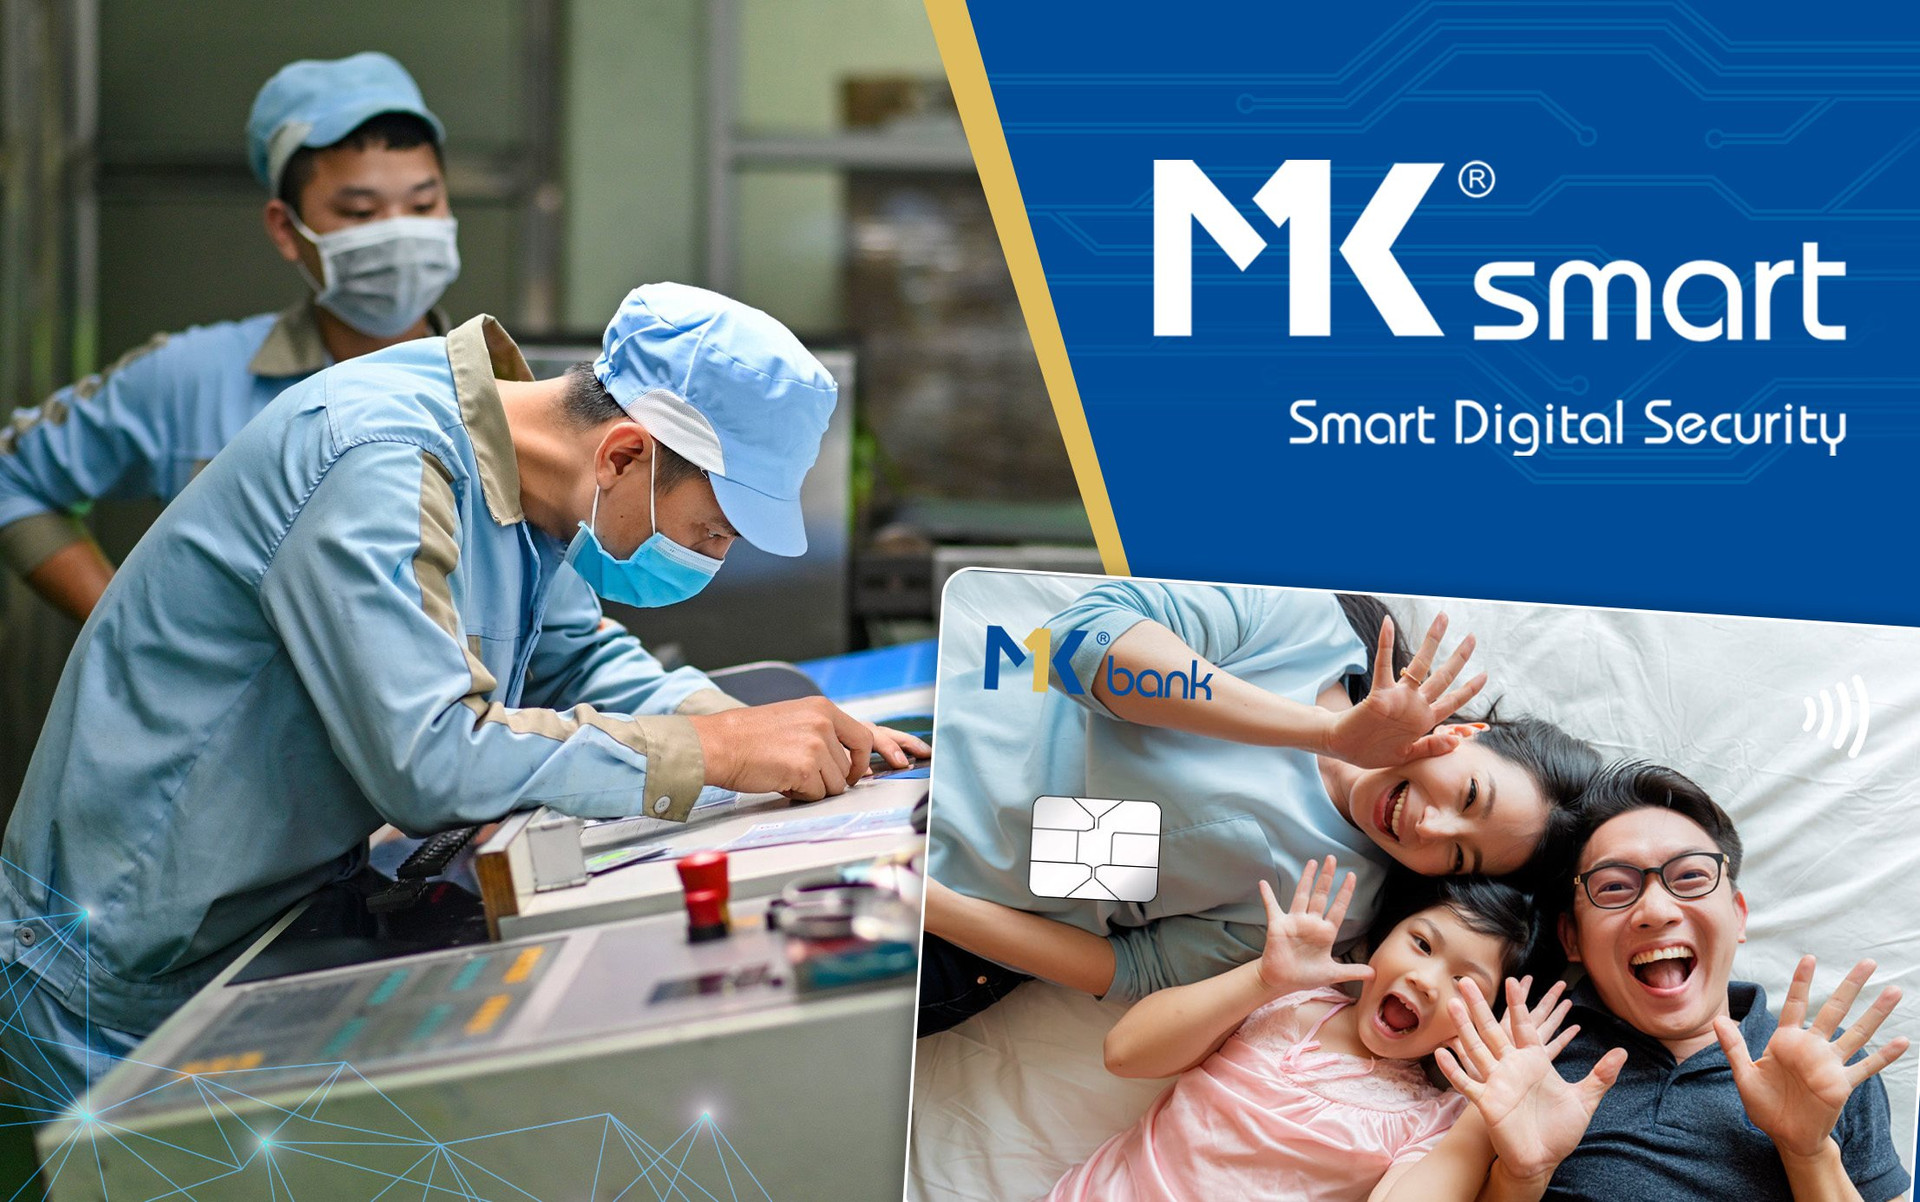 MK Smart: phát triển bền vững nhờ không ngừng đổi mới sáng tạo